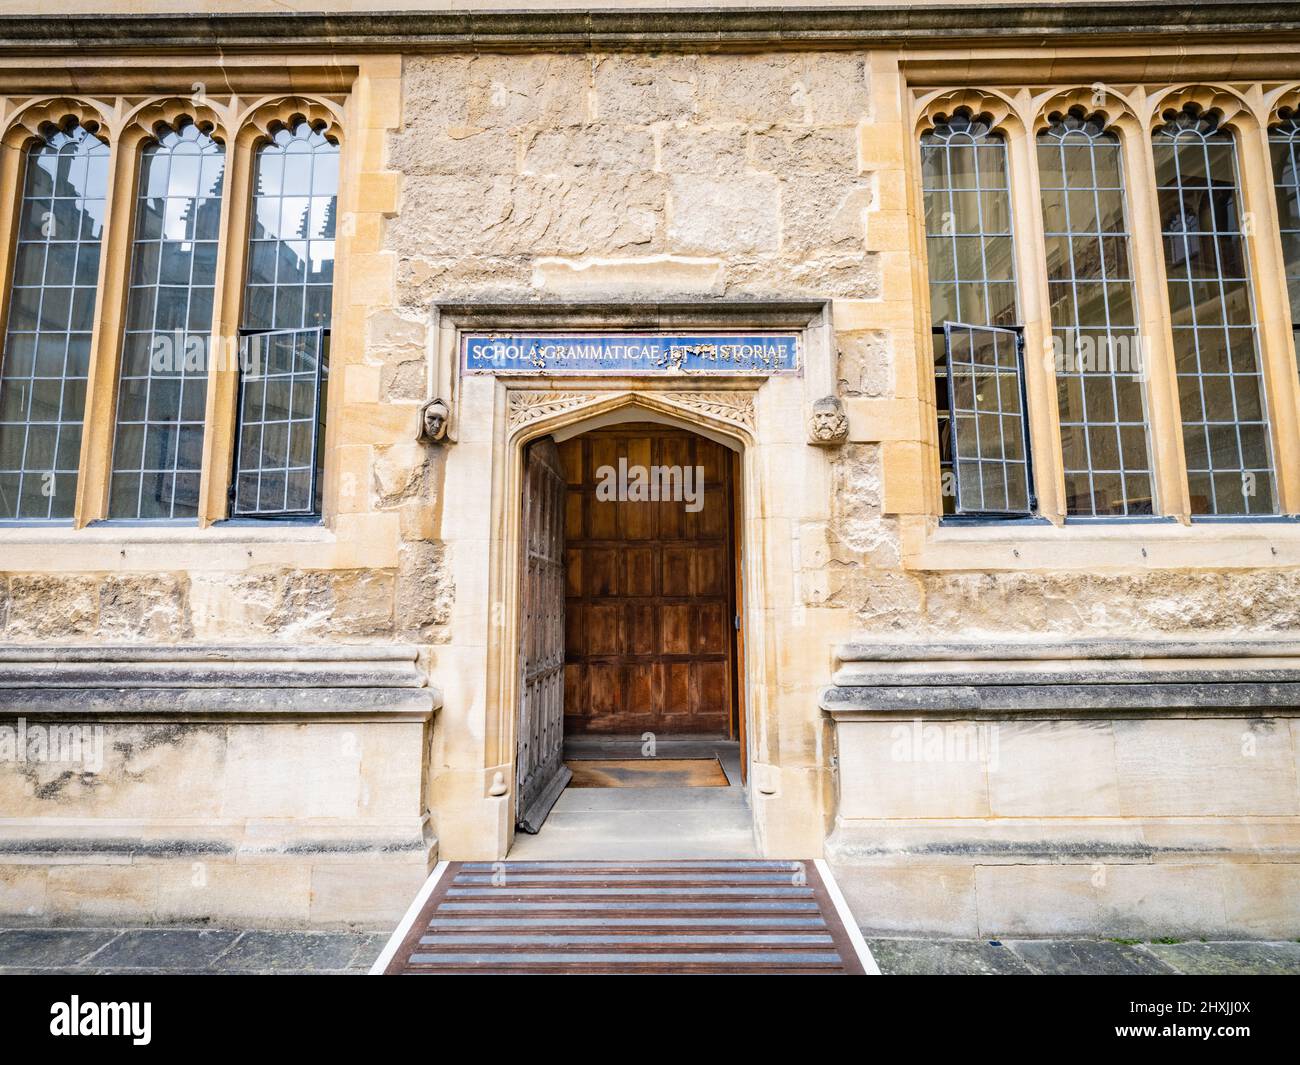 Eintritt in eine der Bodleian Libraries, Oxford, Großbritannien Stockfoto